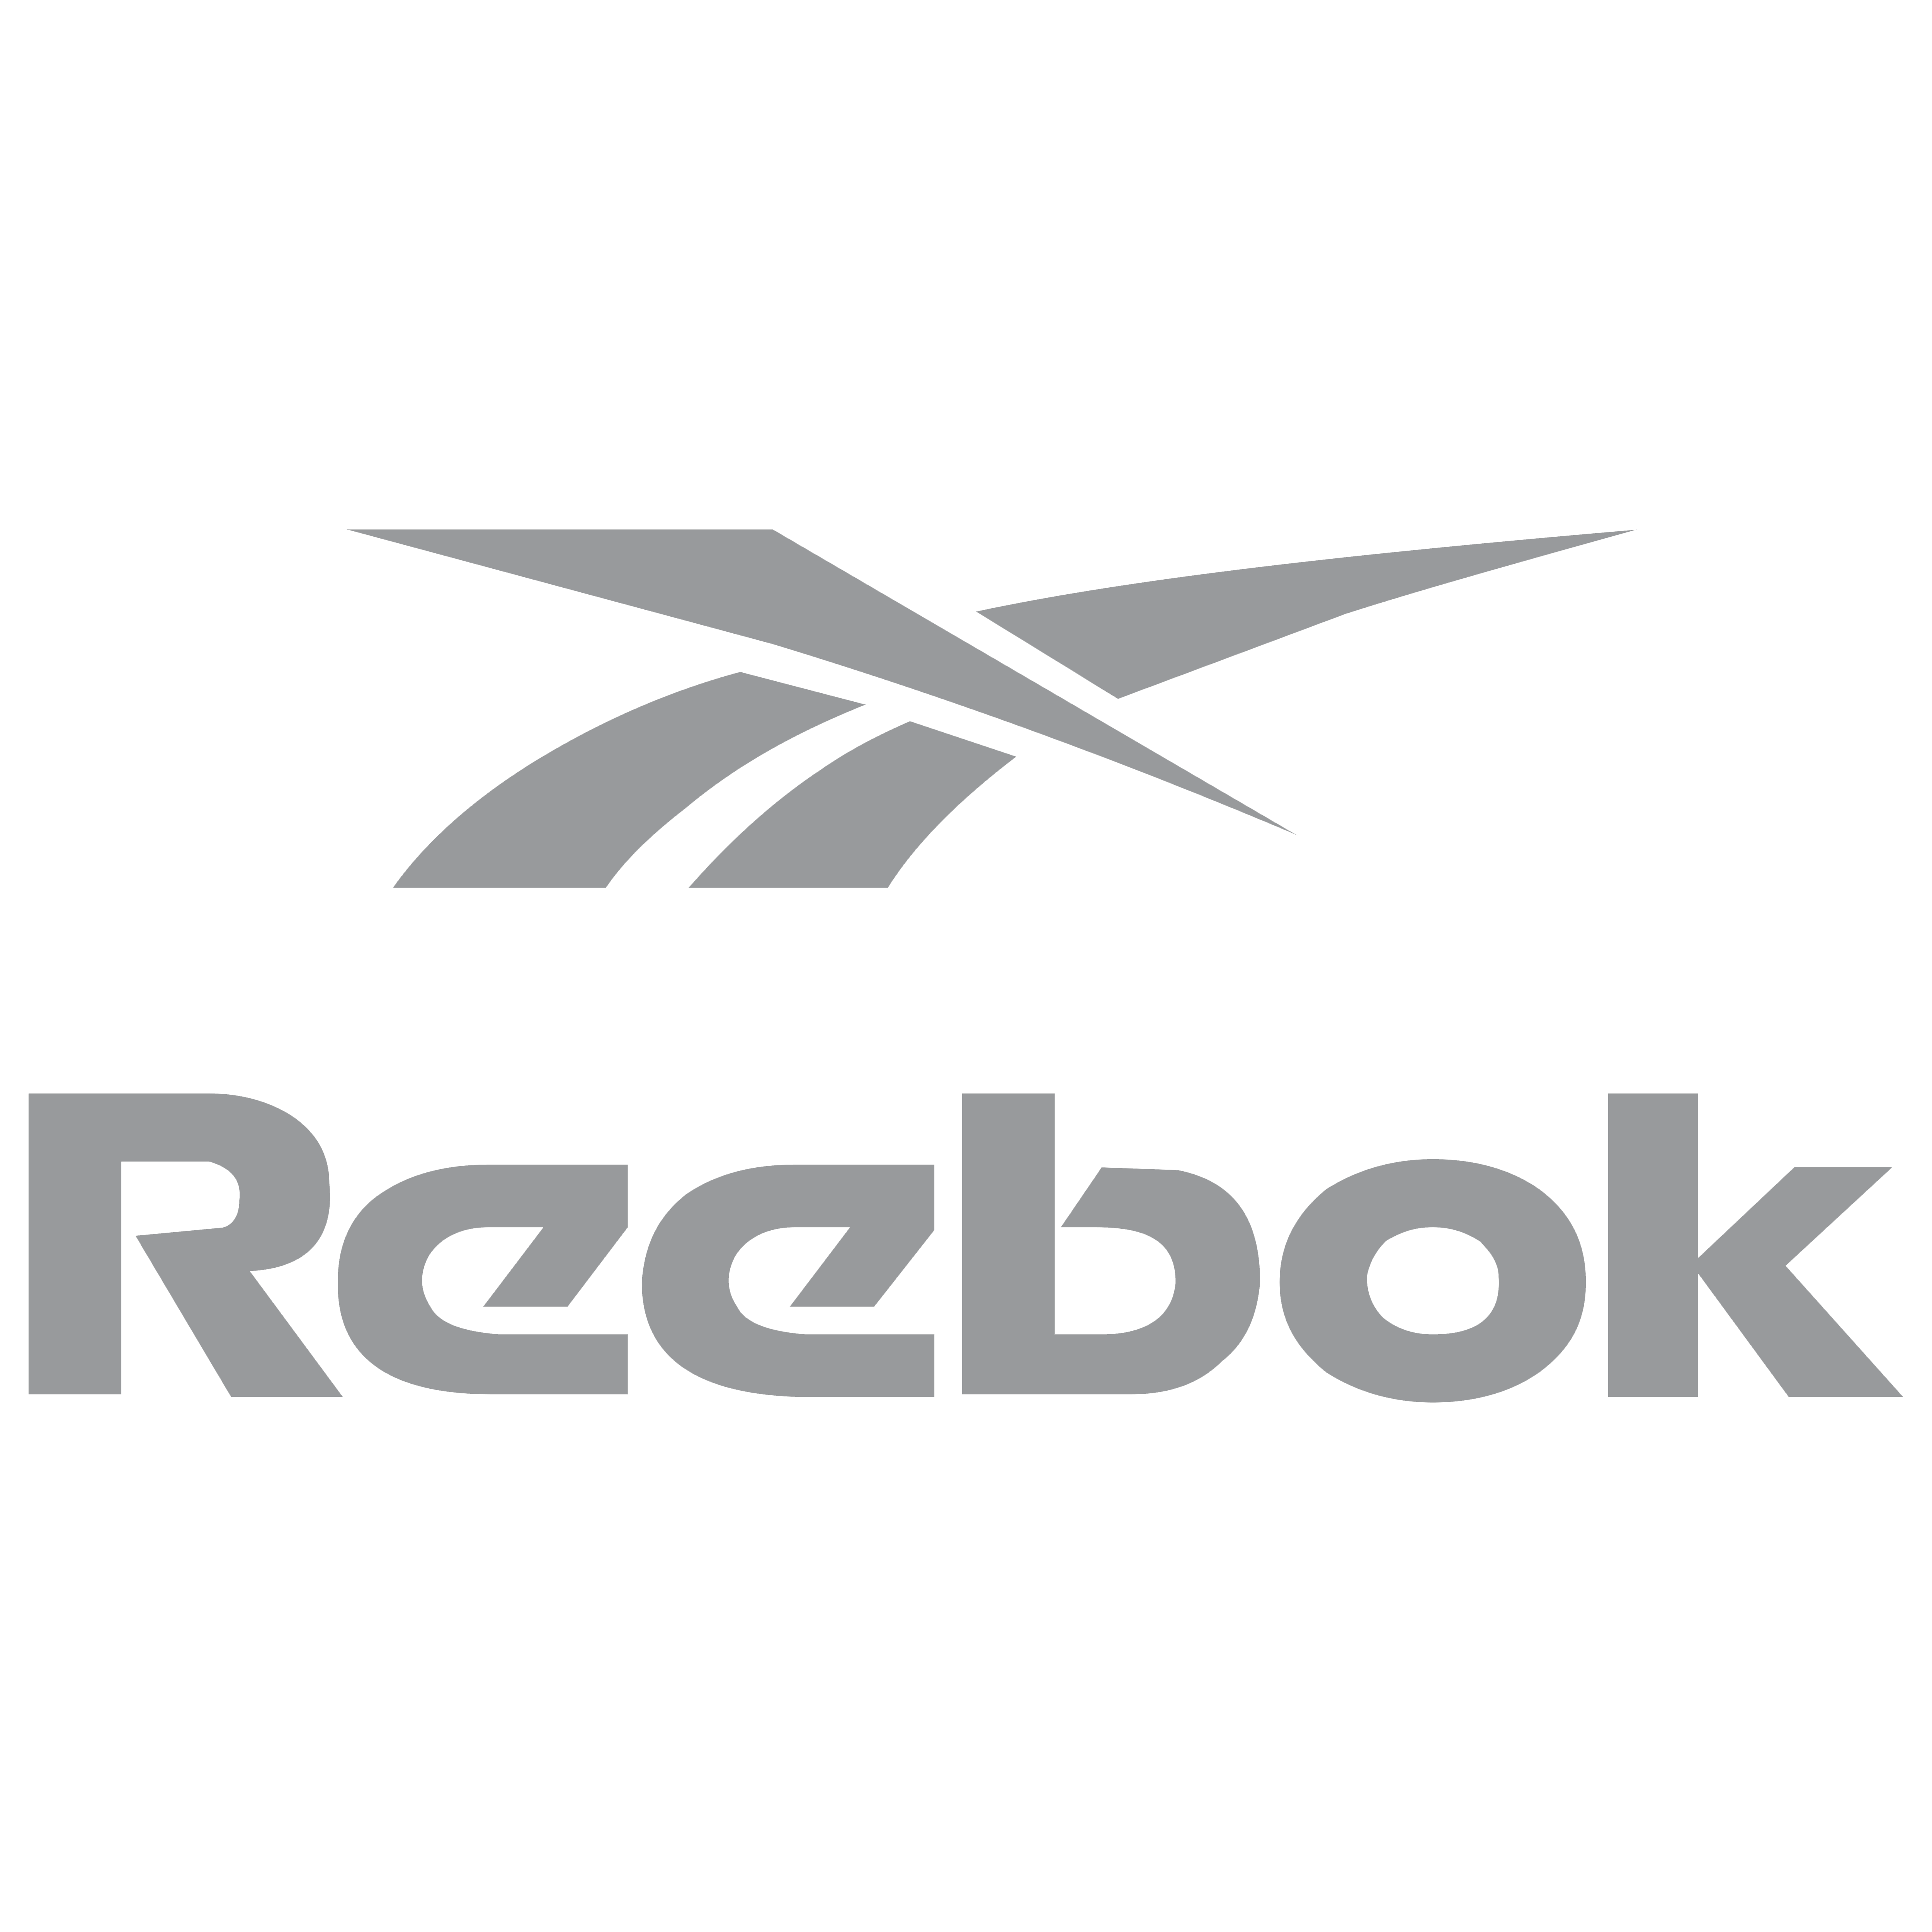 Reebok Logo Transparent Image